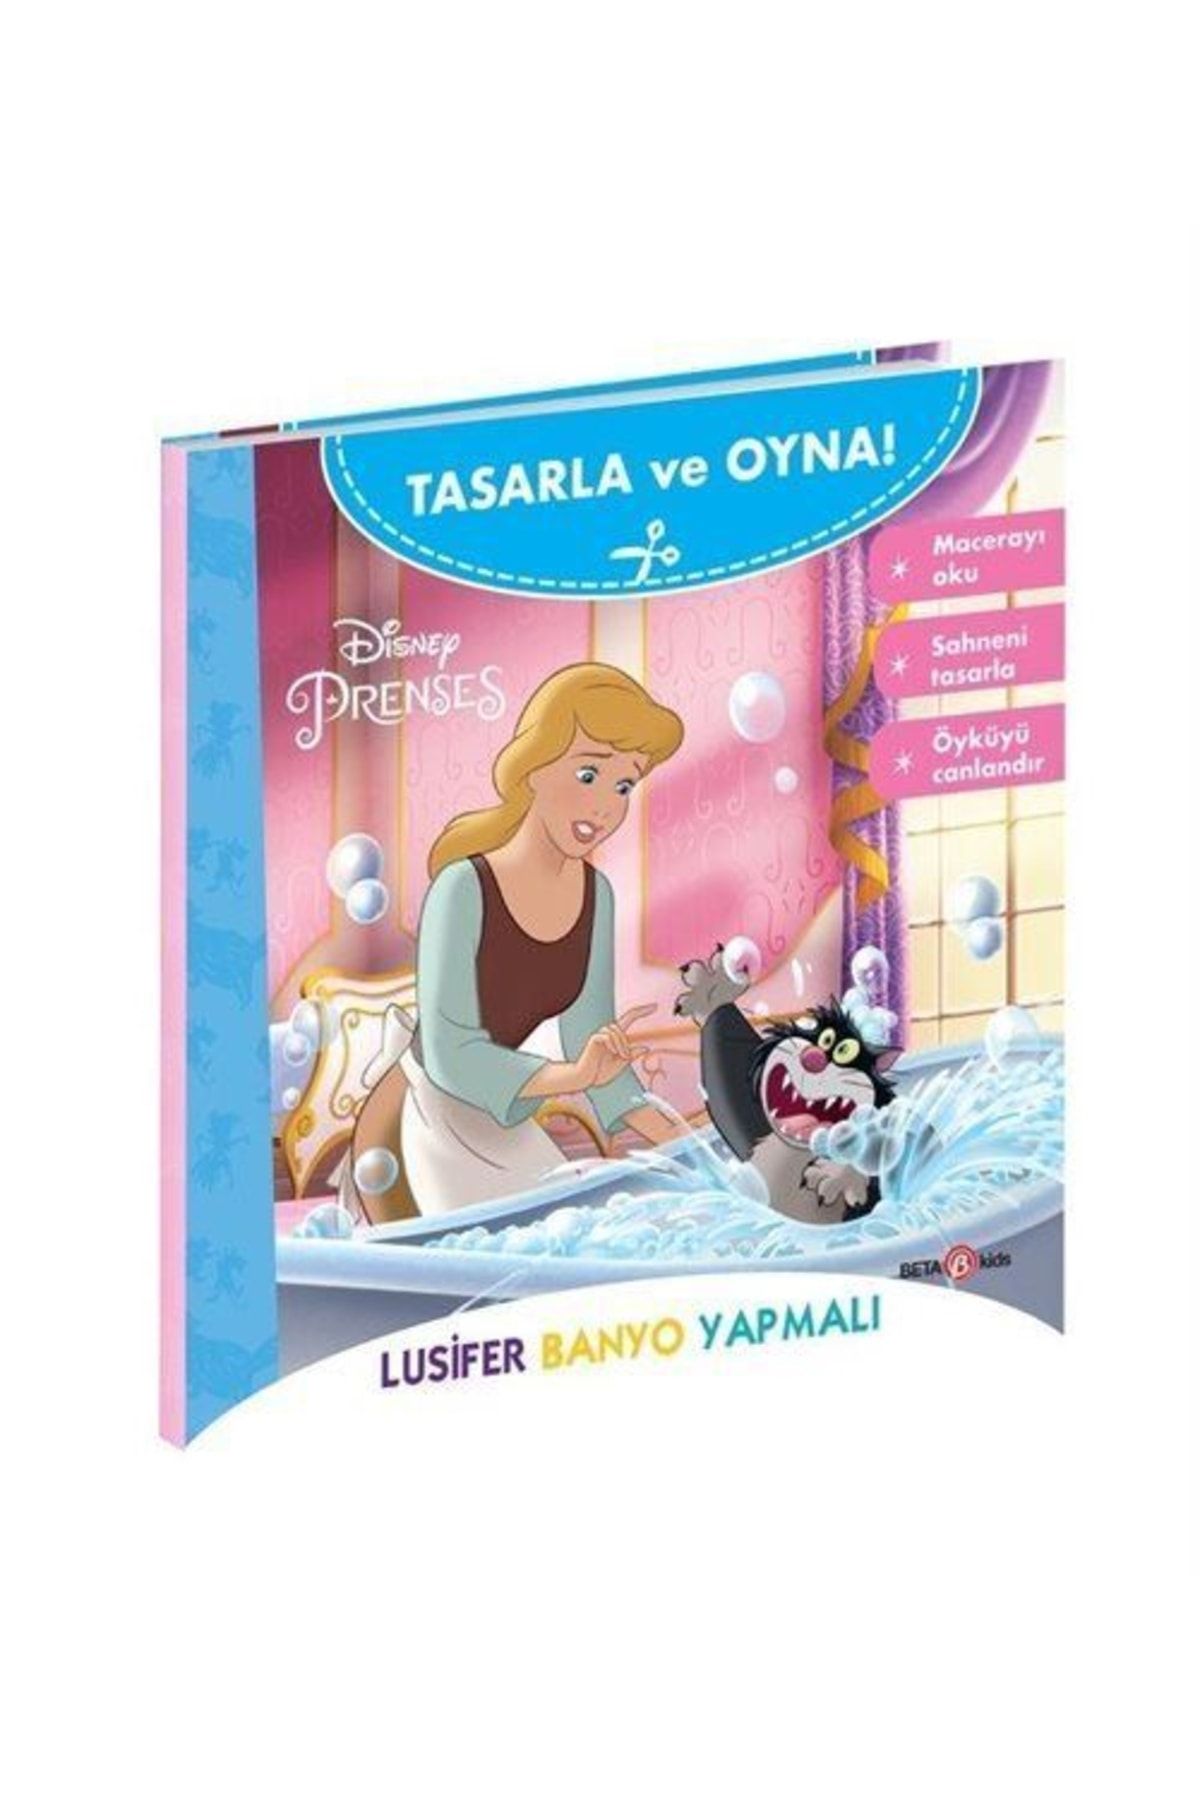 Beta Kids Disney Prenses Tasarla ve Oyna Lusifer Banyo Yapmalı